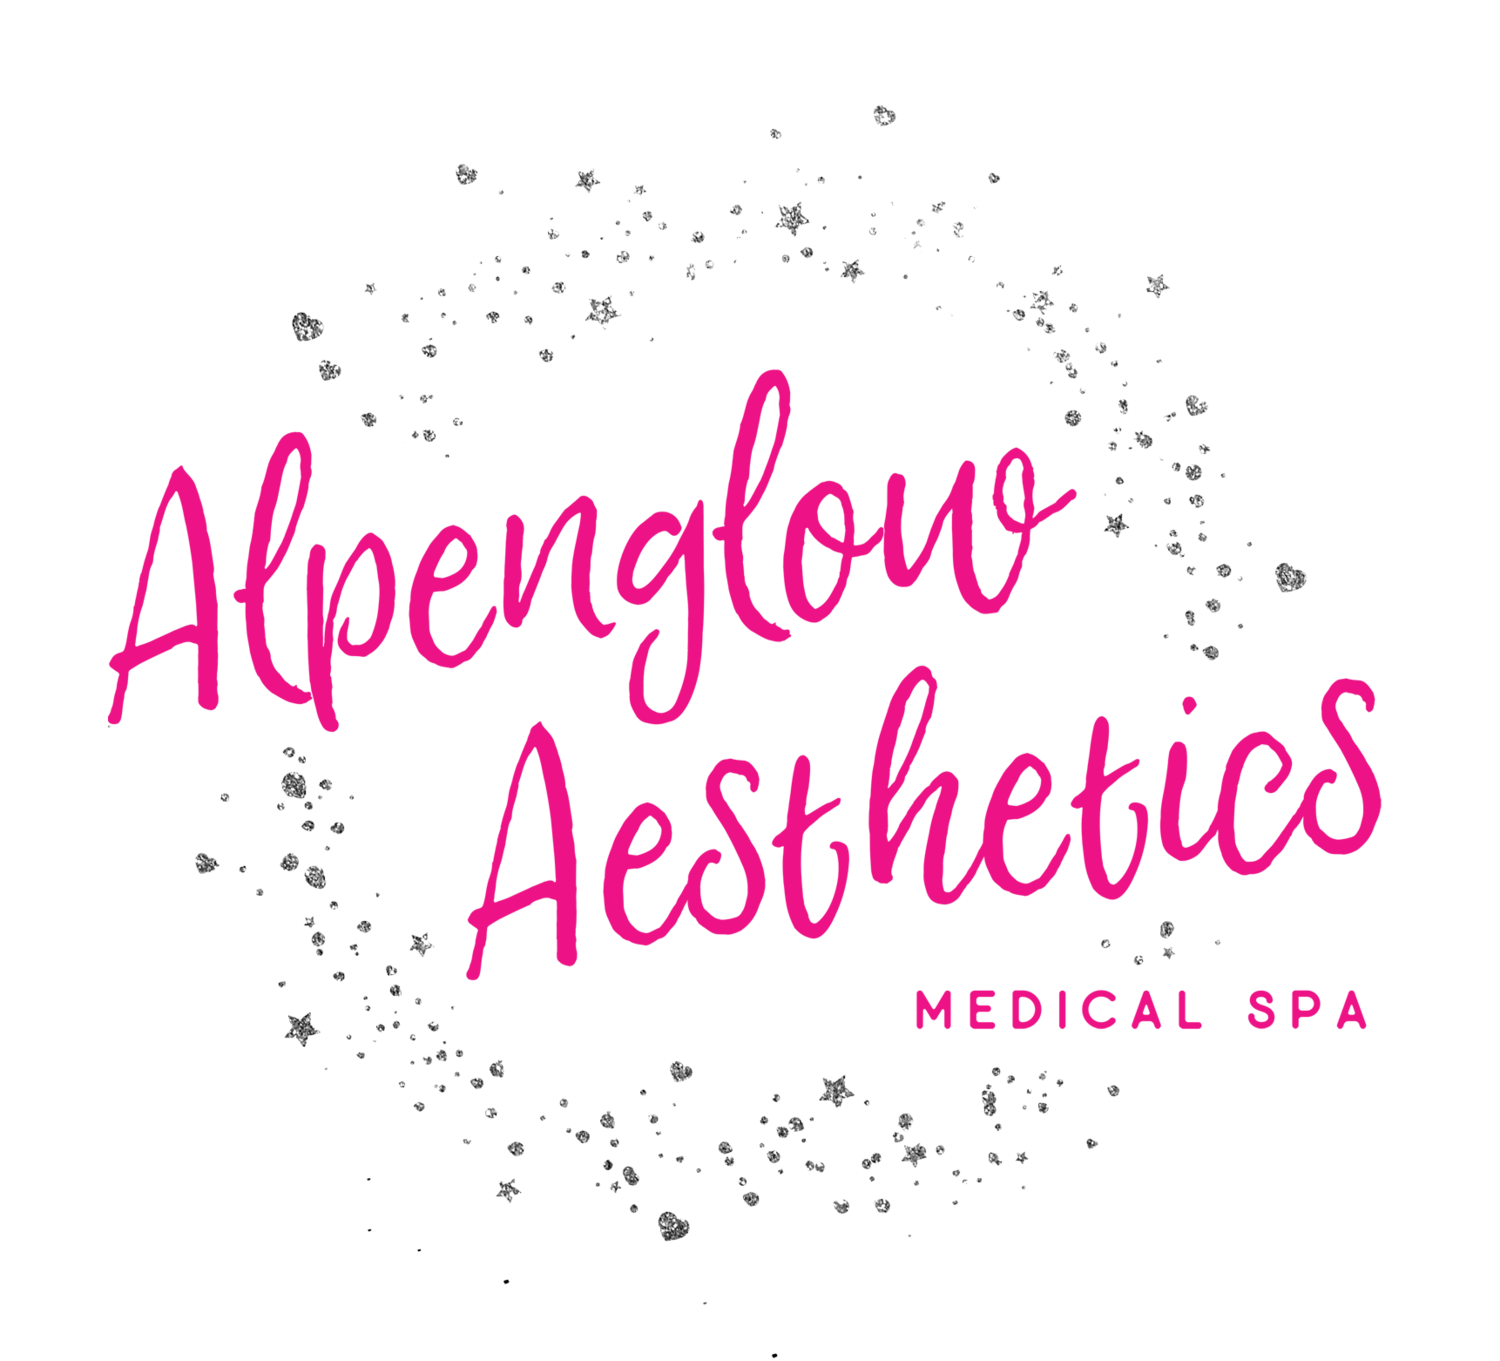 Alpenglow Aesthetics